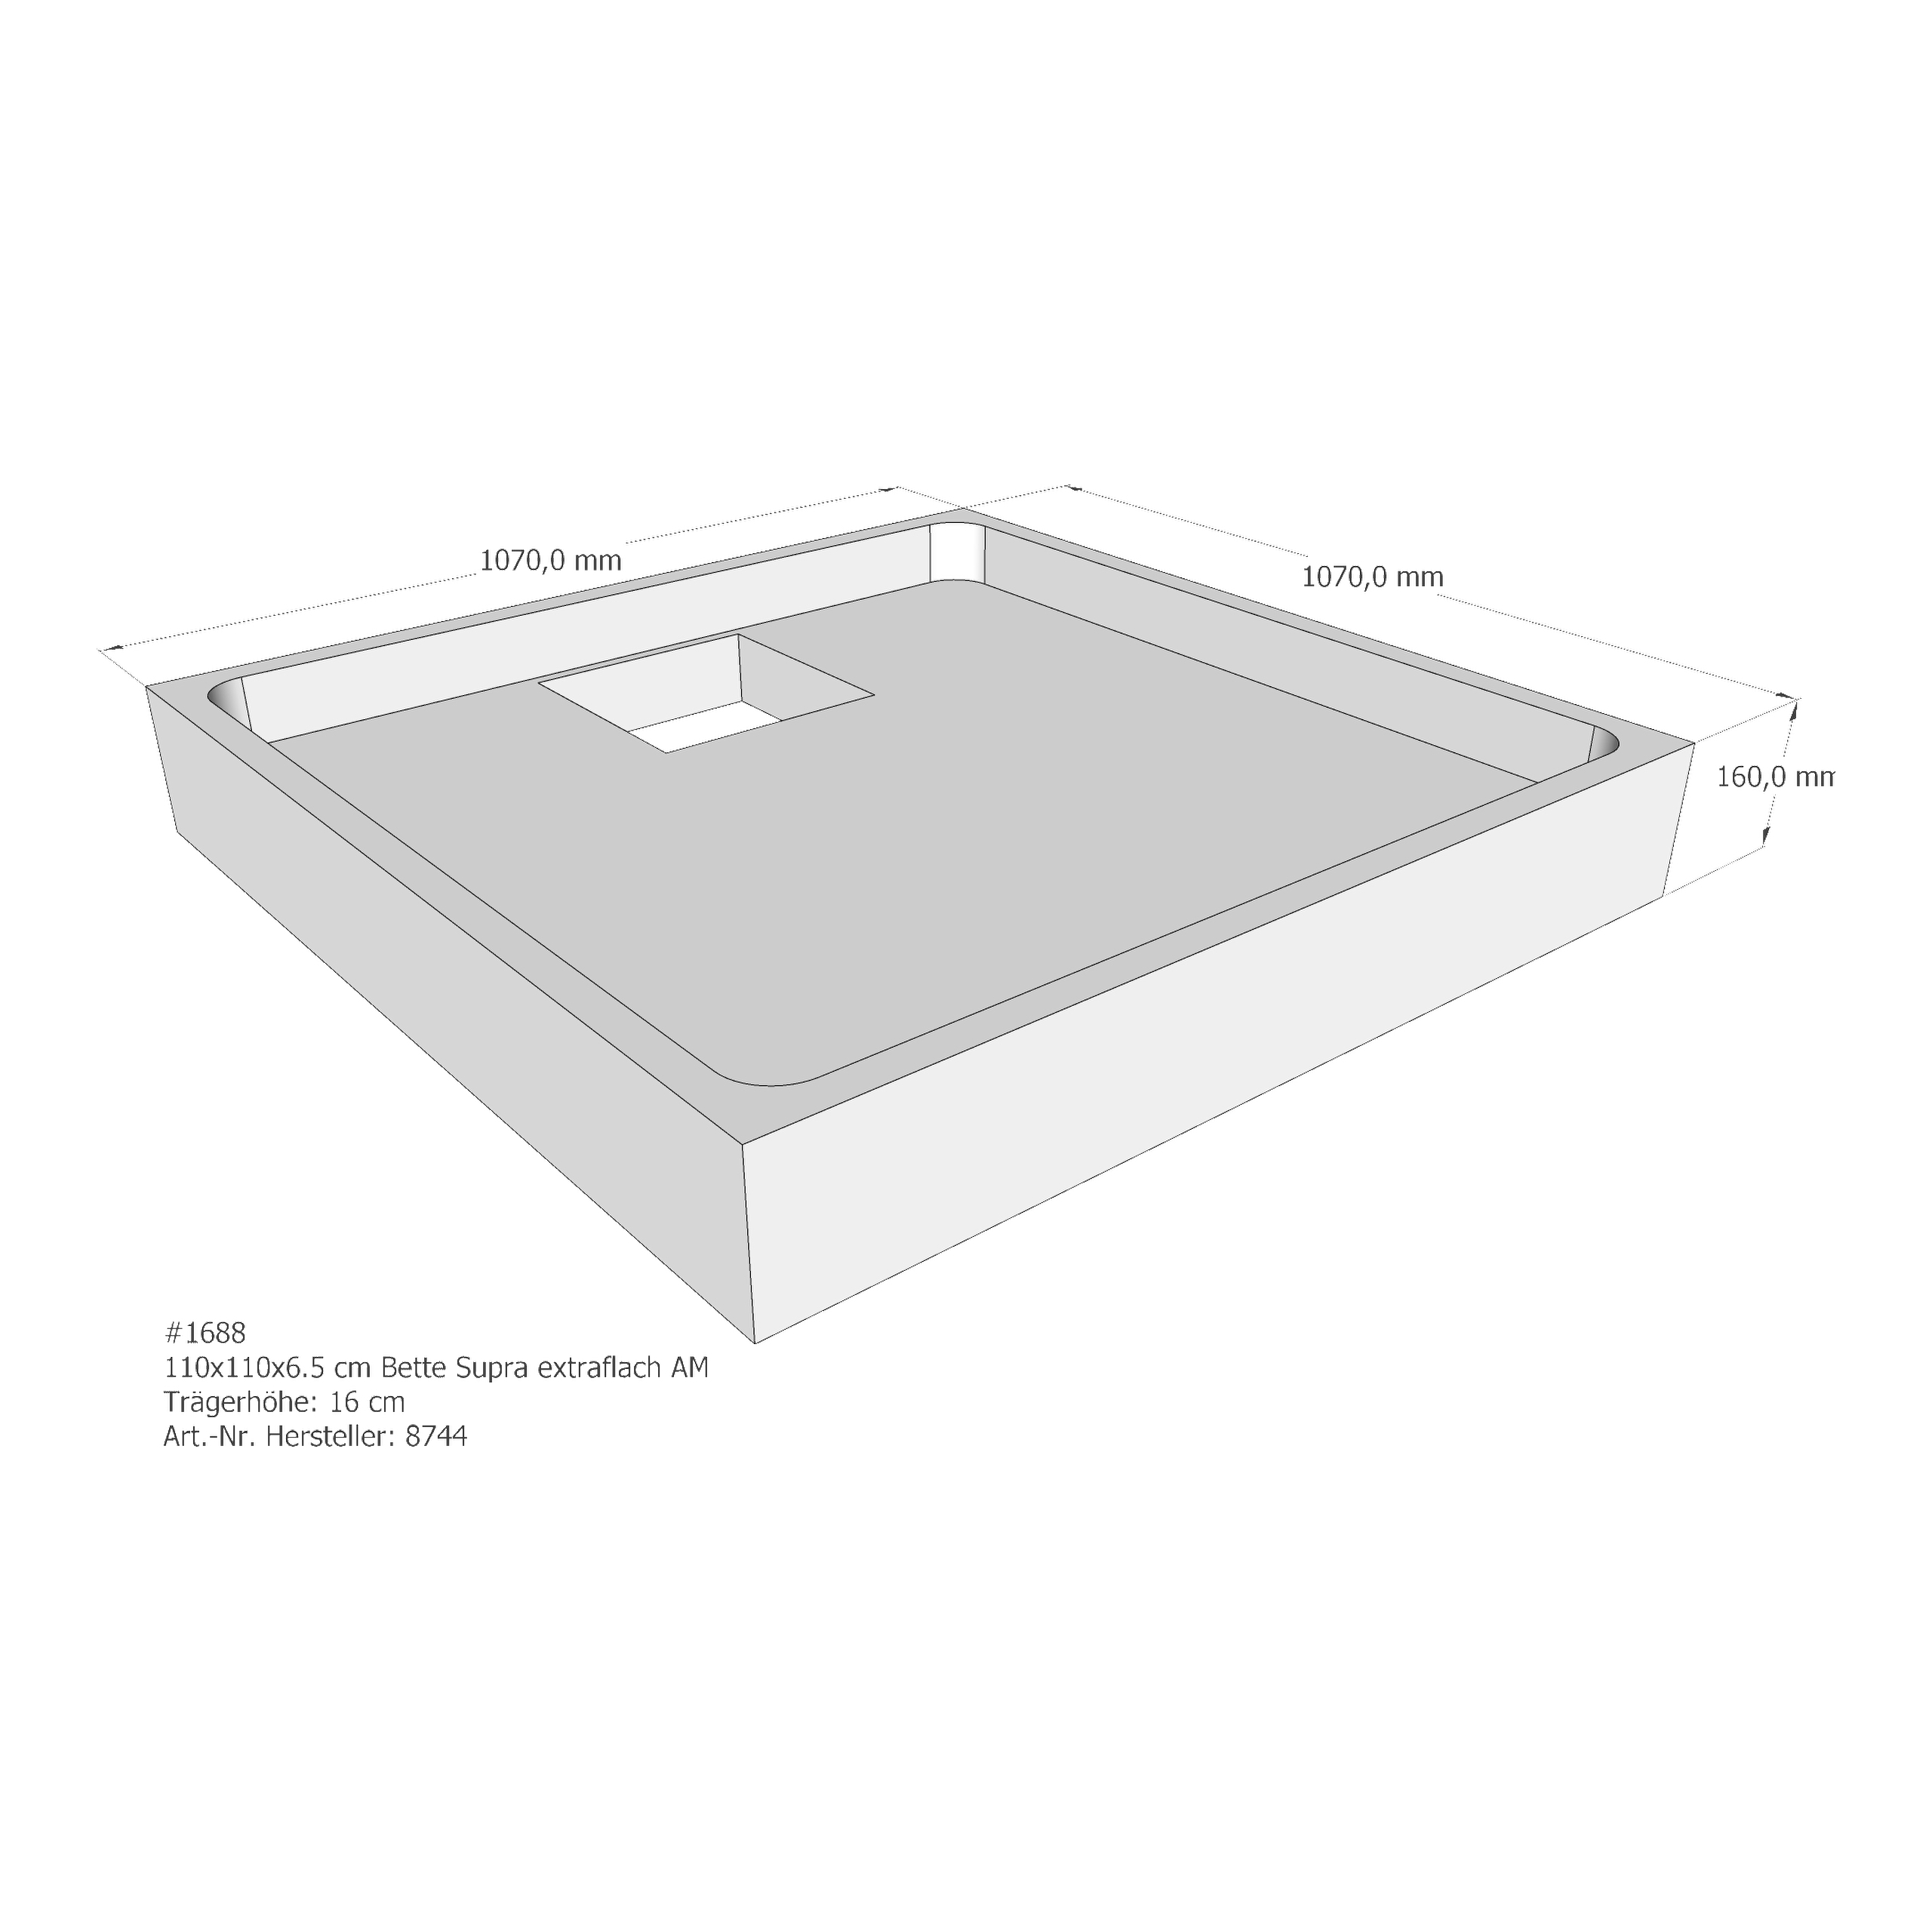 Duschwannenträger für Bette BetteSupra (extraflach) 110 × 110 × 6,5 cm